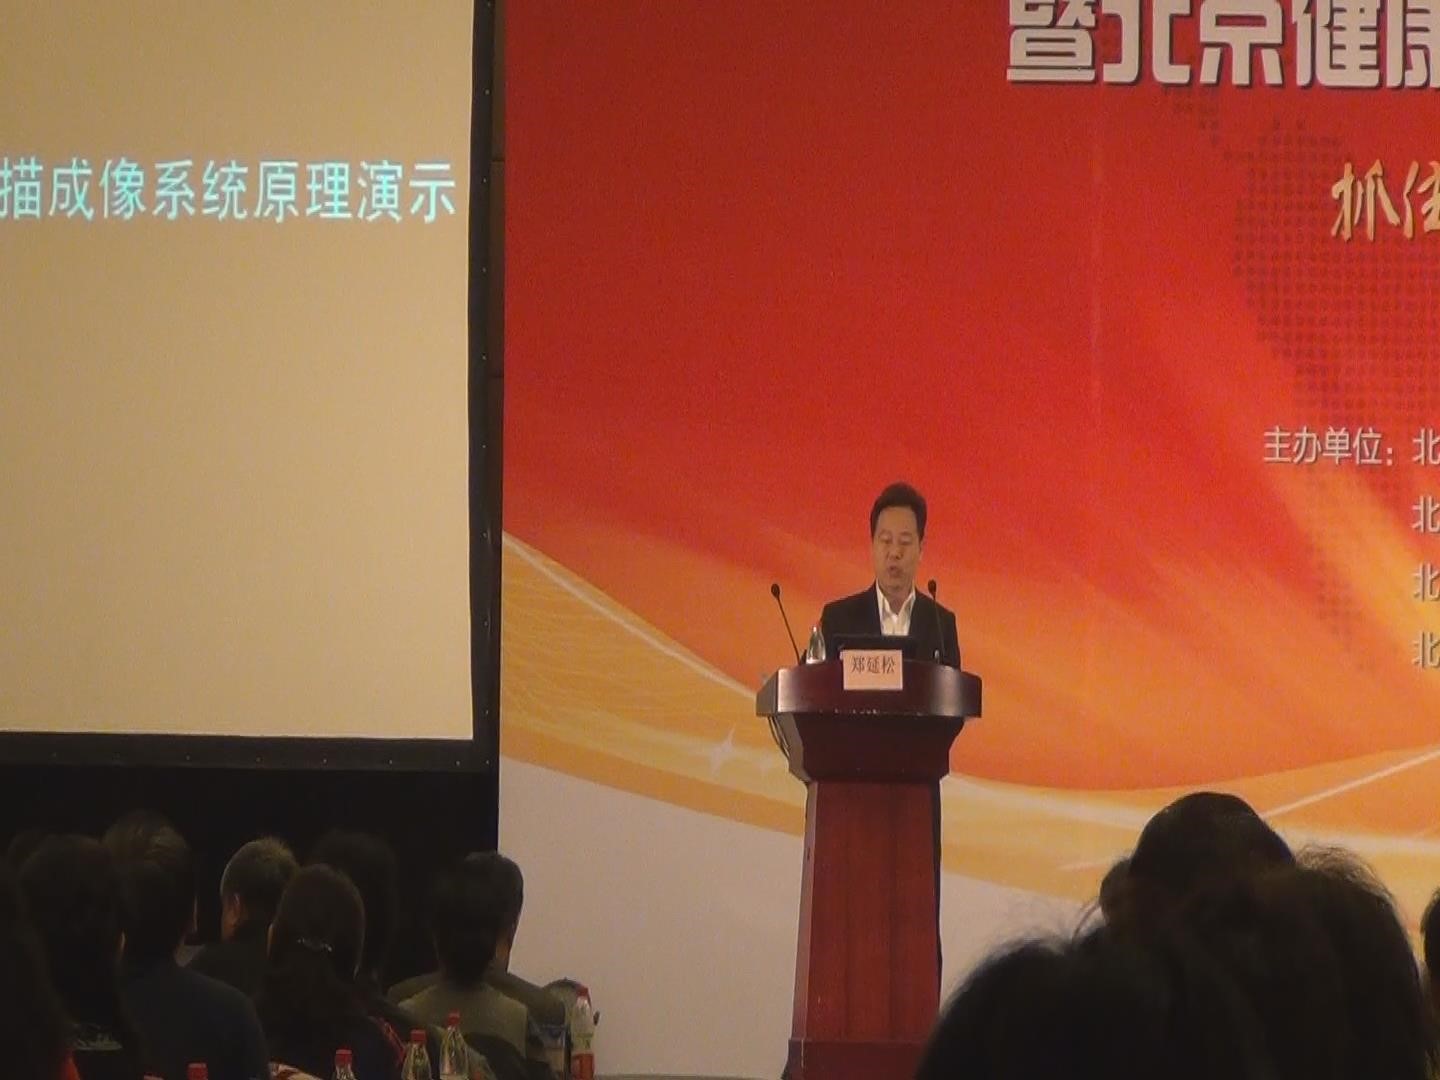 贝亿热断层（TTM）受邀参加北京市第九届健康管理大会暨北京健康管理协会第六届年会